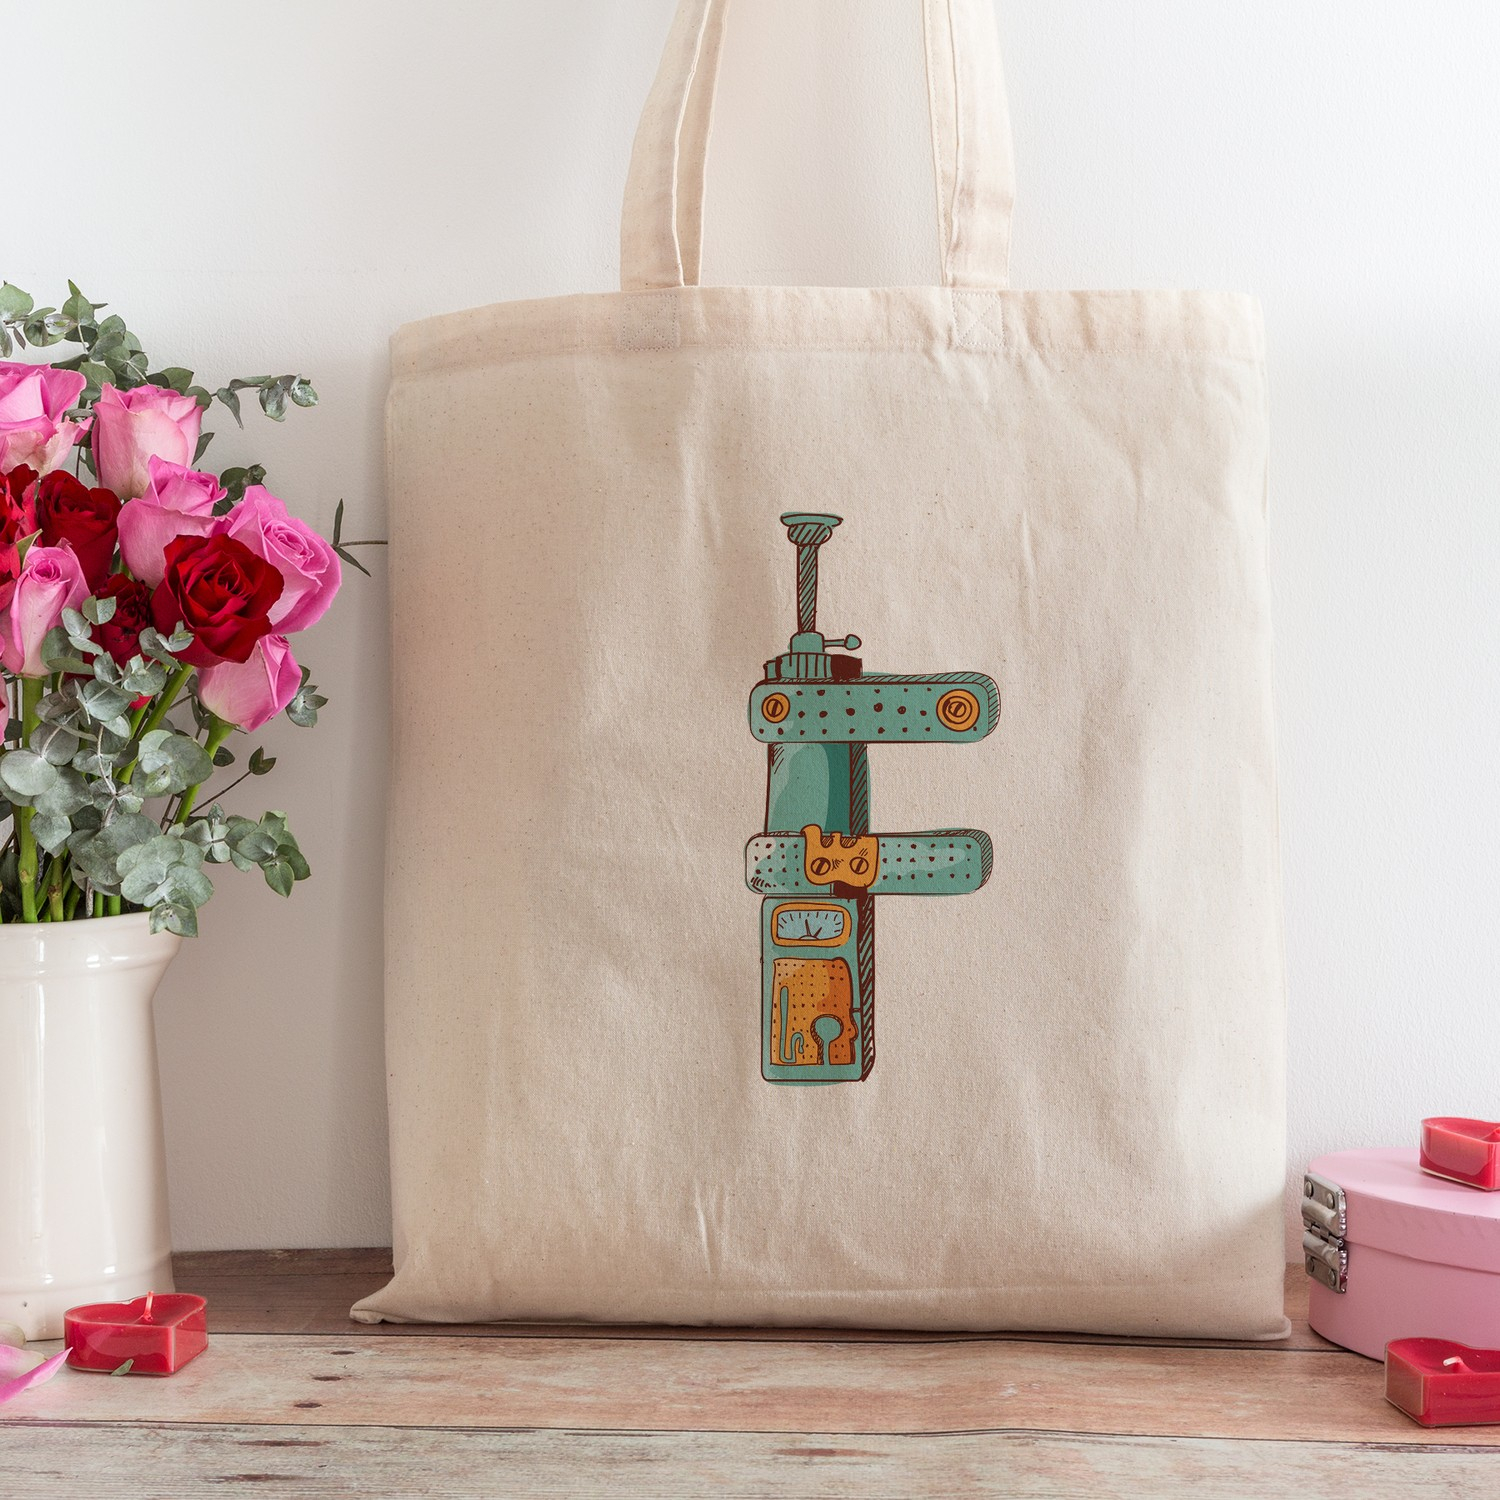 Пляжная сумка для покупок с дизайном буквы F из интернет-магазина подарочных сертификатов